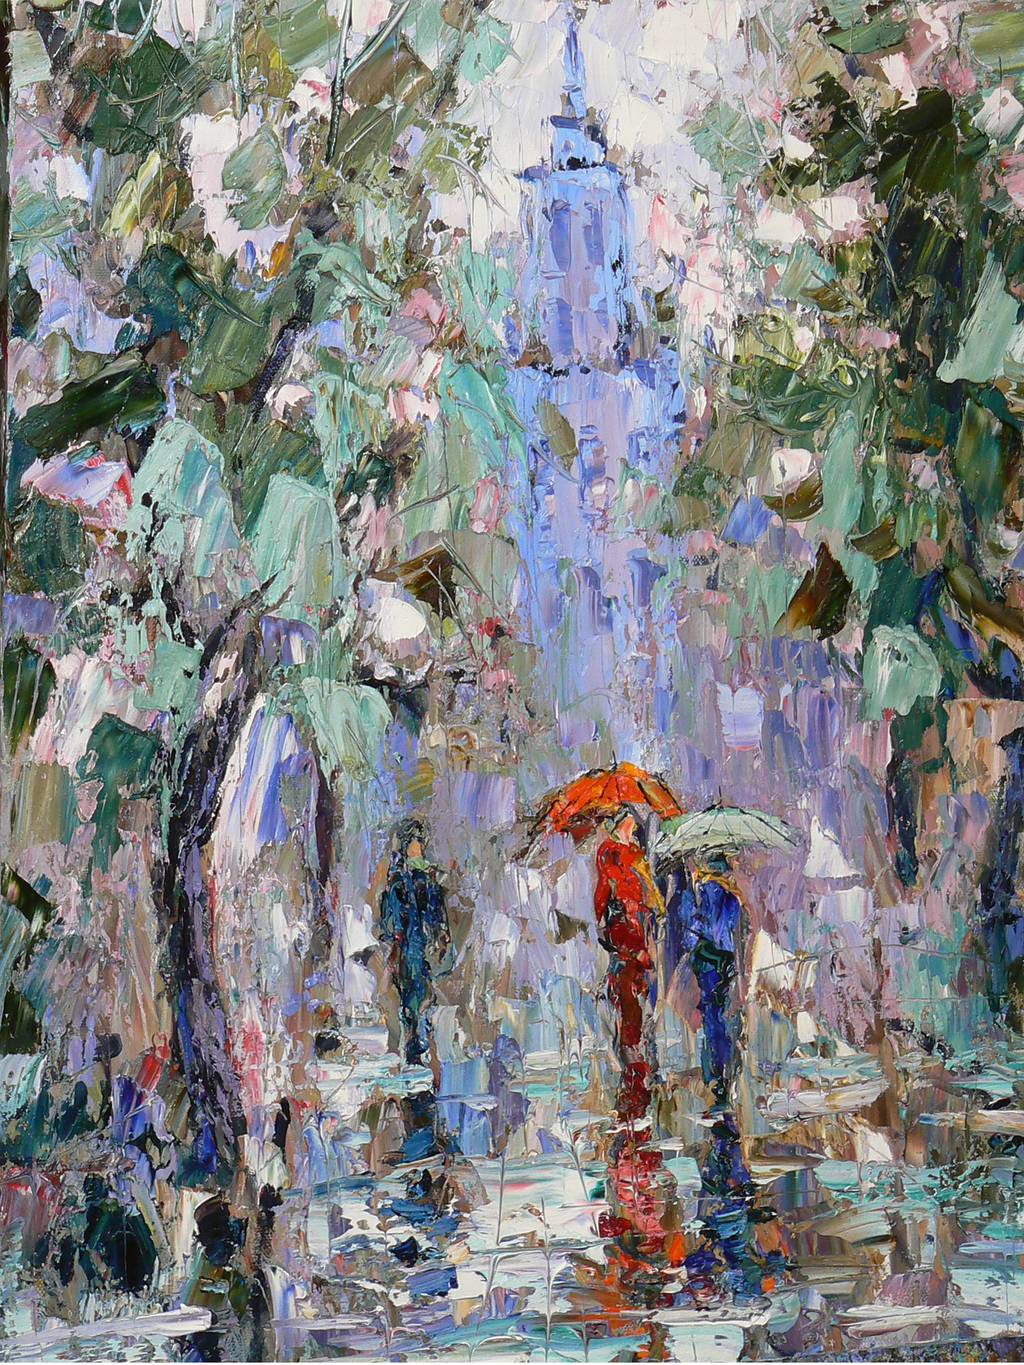 Moscow Rain, 80x60cm., oil on canvas, 2015